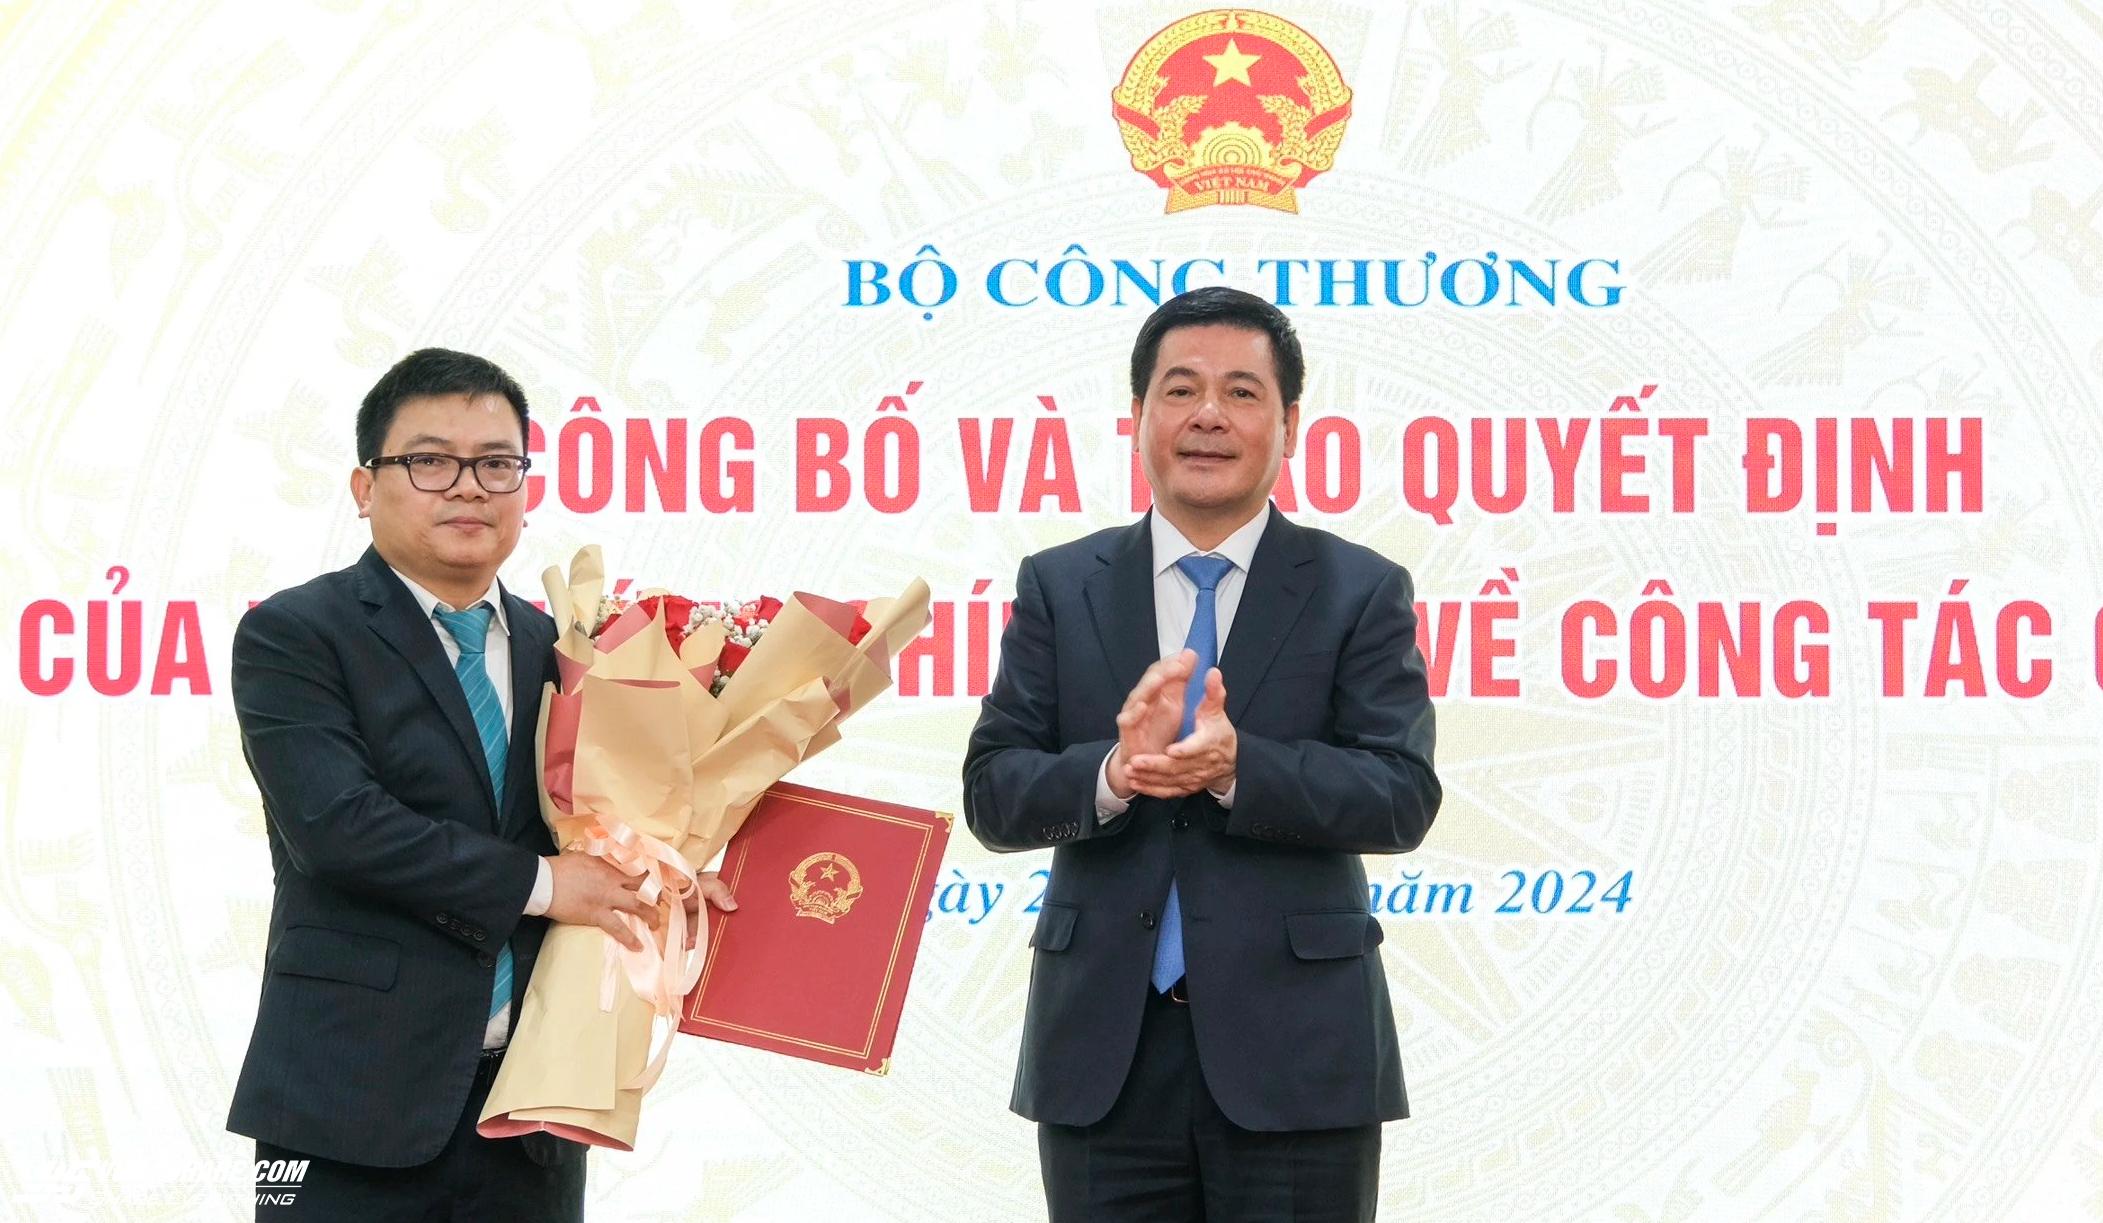 Thủ tướng bổ nhiệm ông Trương Thanh Hoài làm Thứ trưởng Bộ Công thương- Ảnh 1.